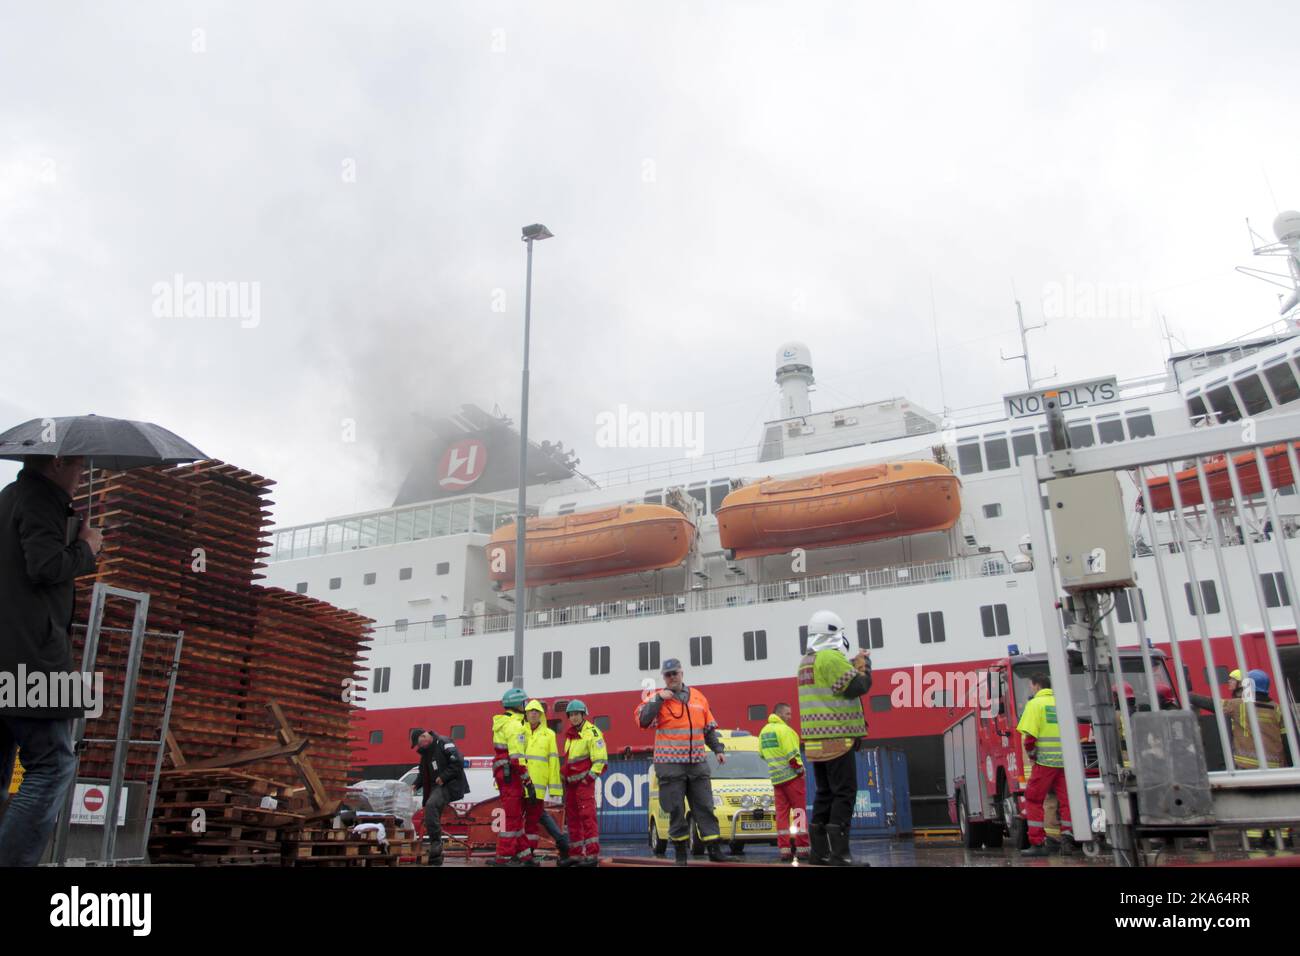 Le squadre di soccorso e antincendio affrontano il fuoco a bordo della nave da crociera MS Nordlys, mostrata al molo di Alesund, Norvegia. Foto Stock